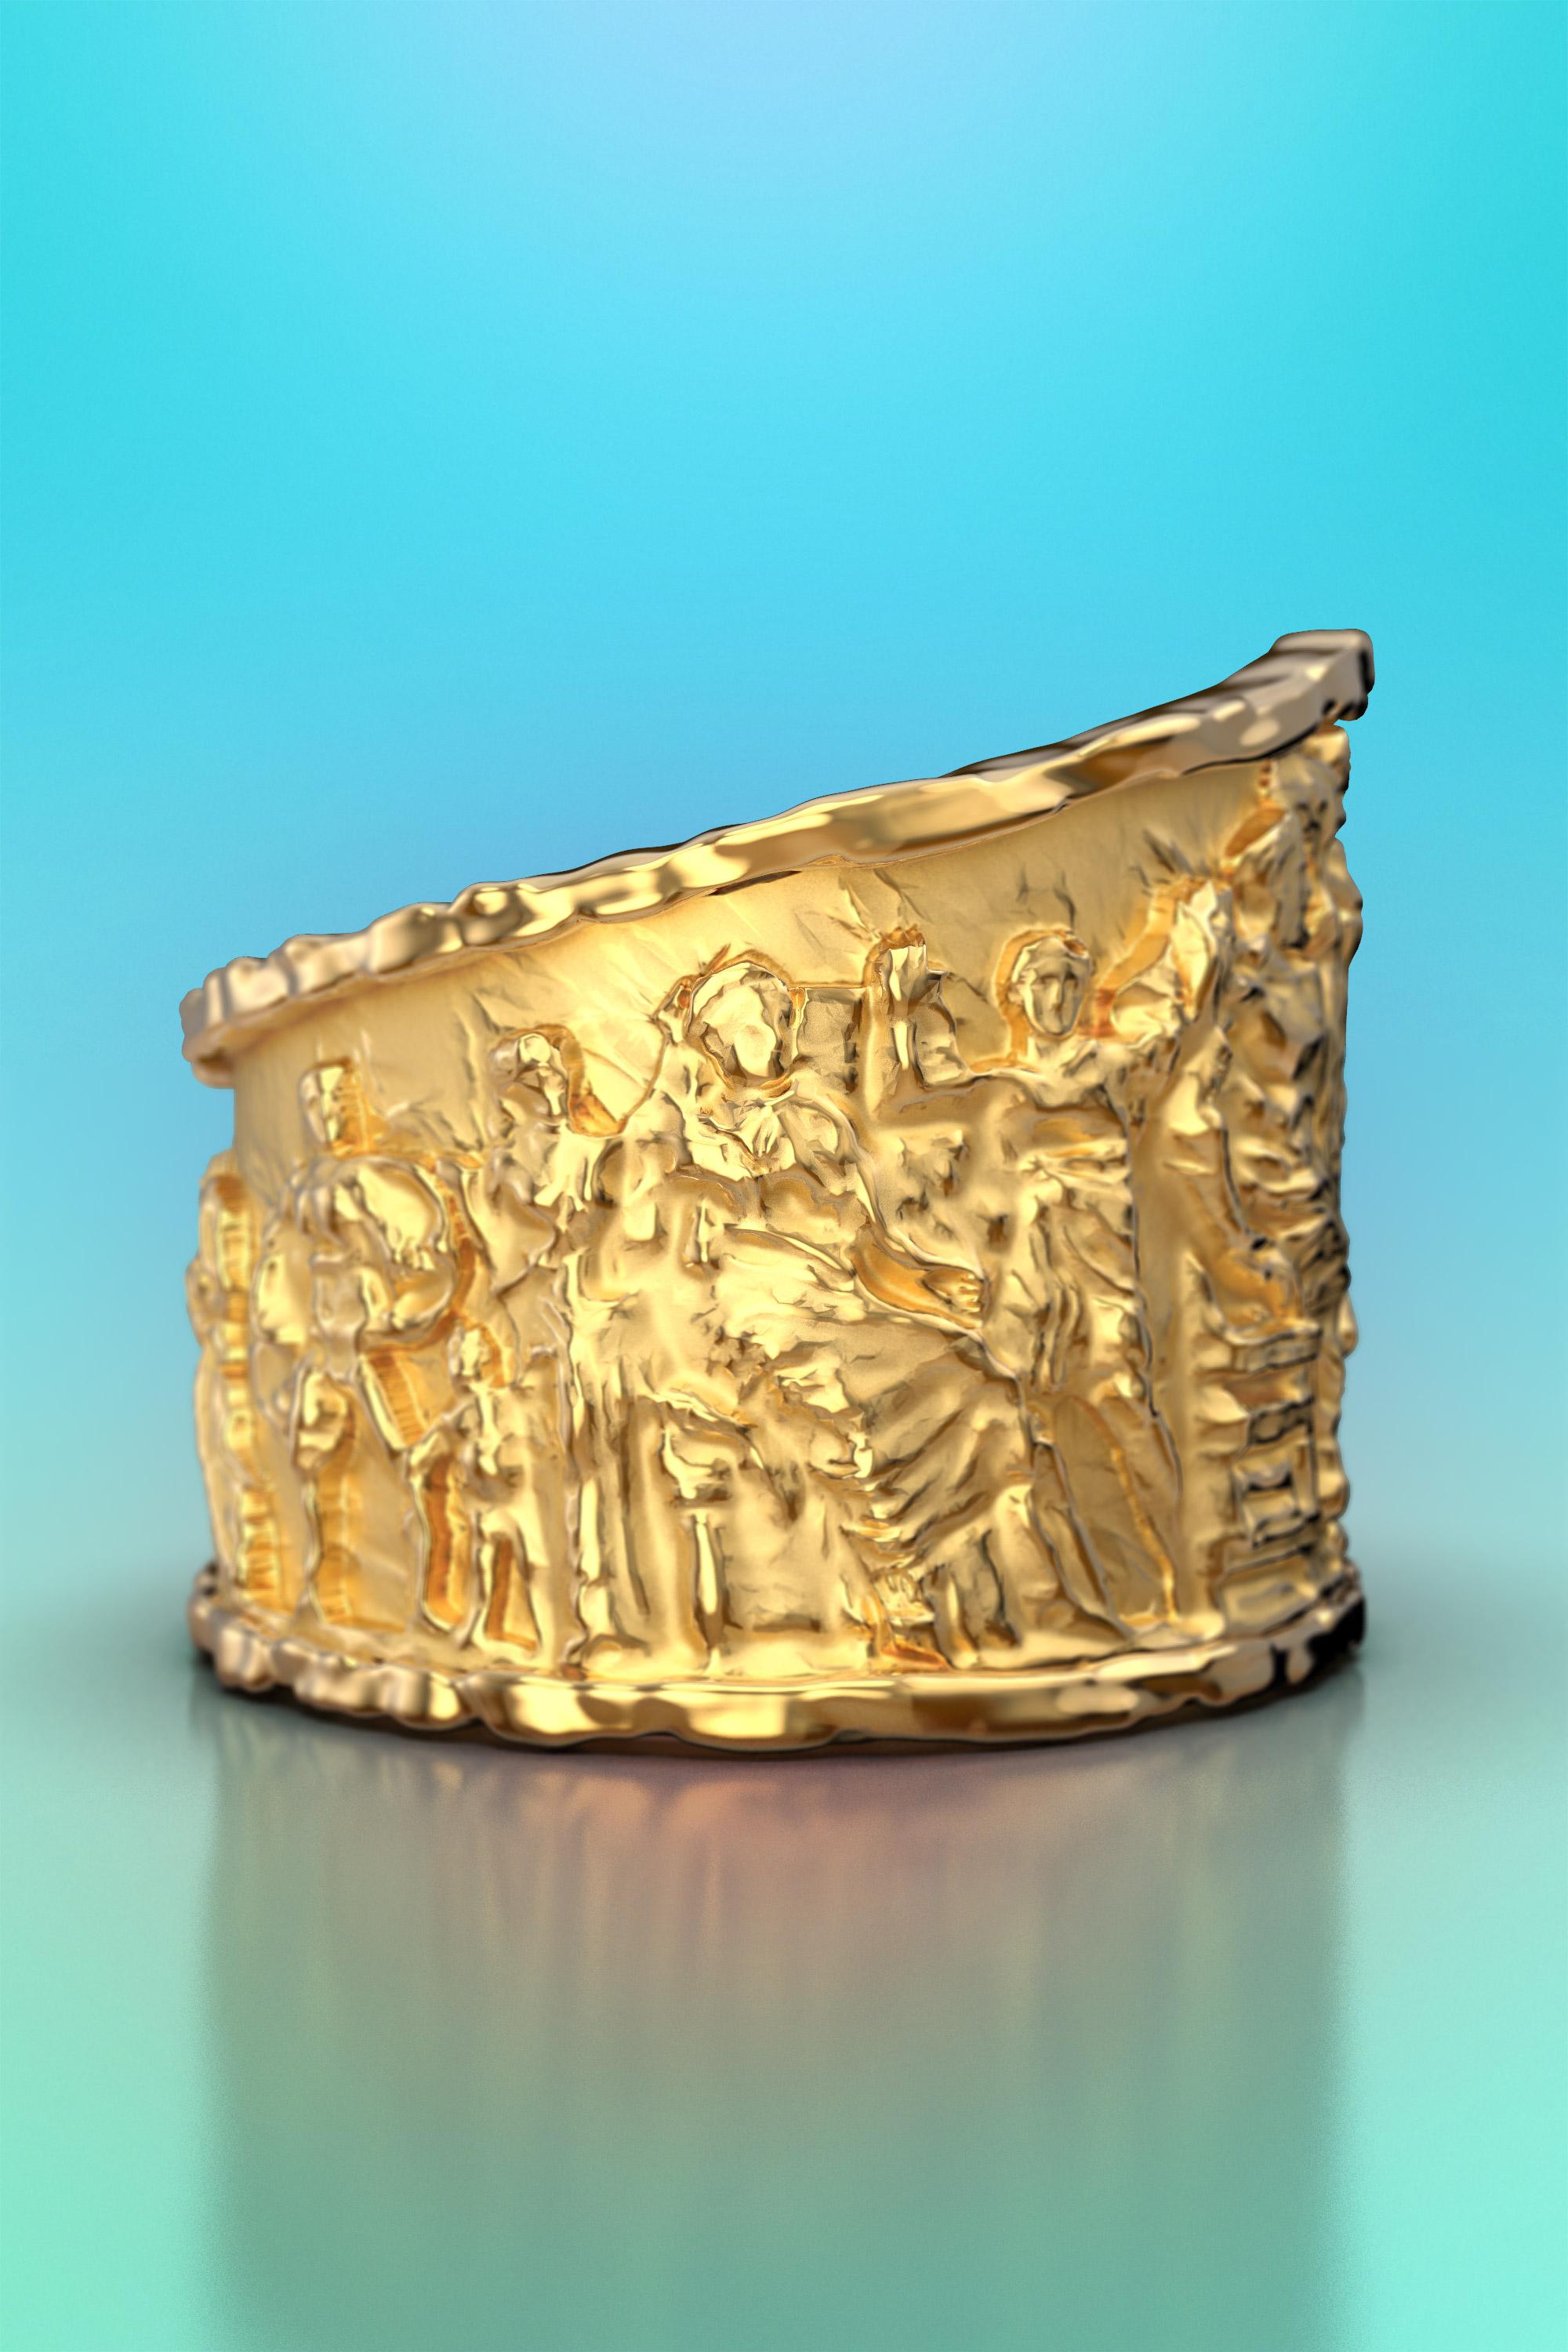 En vente :  Bague en or massif de style ancien, frontons de la bague Parthenon, bague sculptée 3